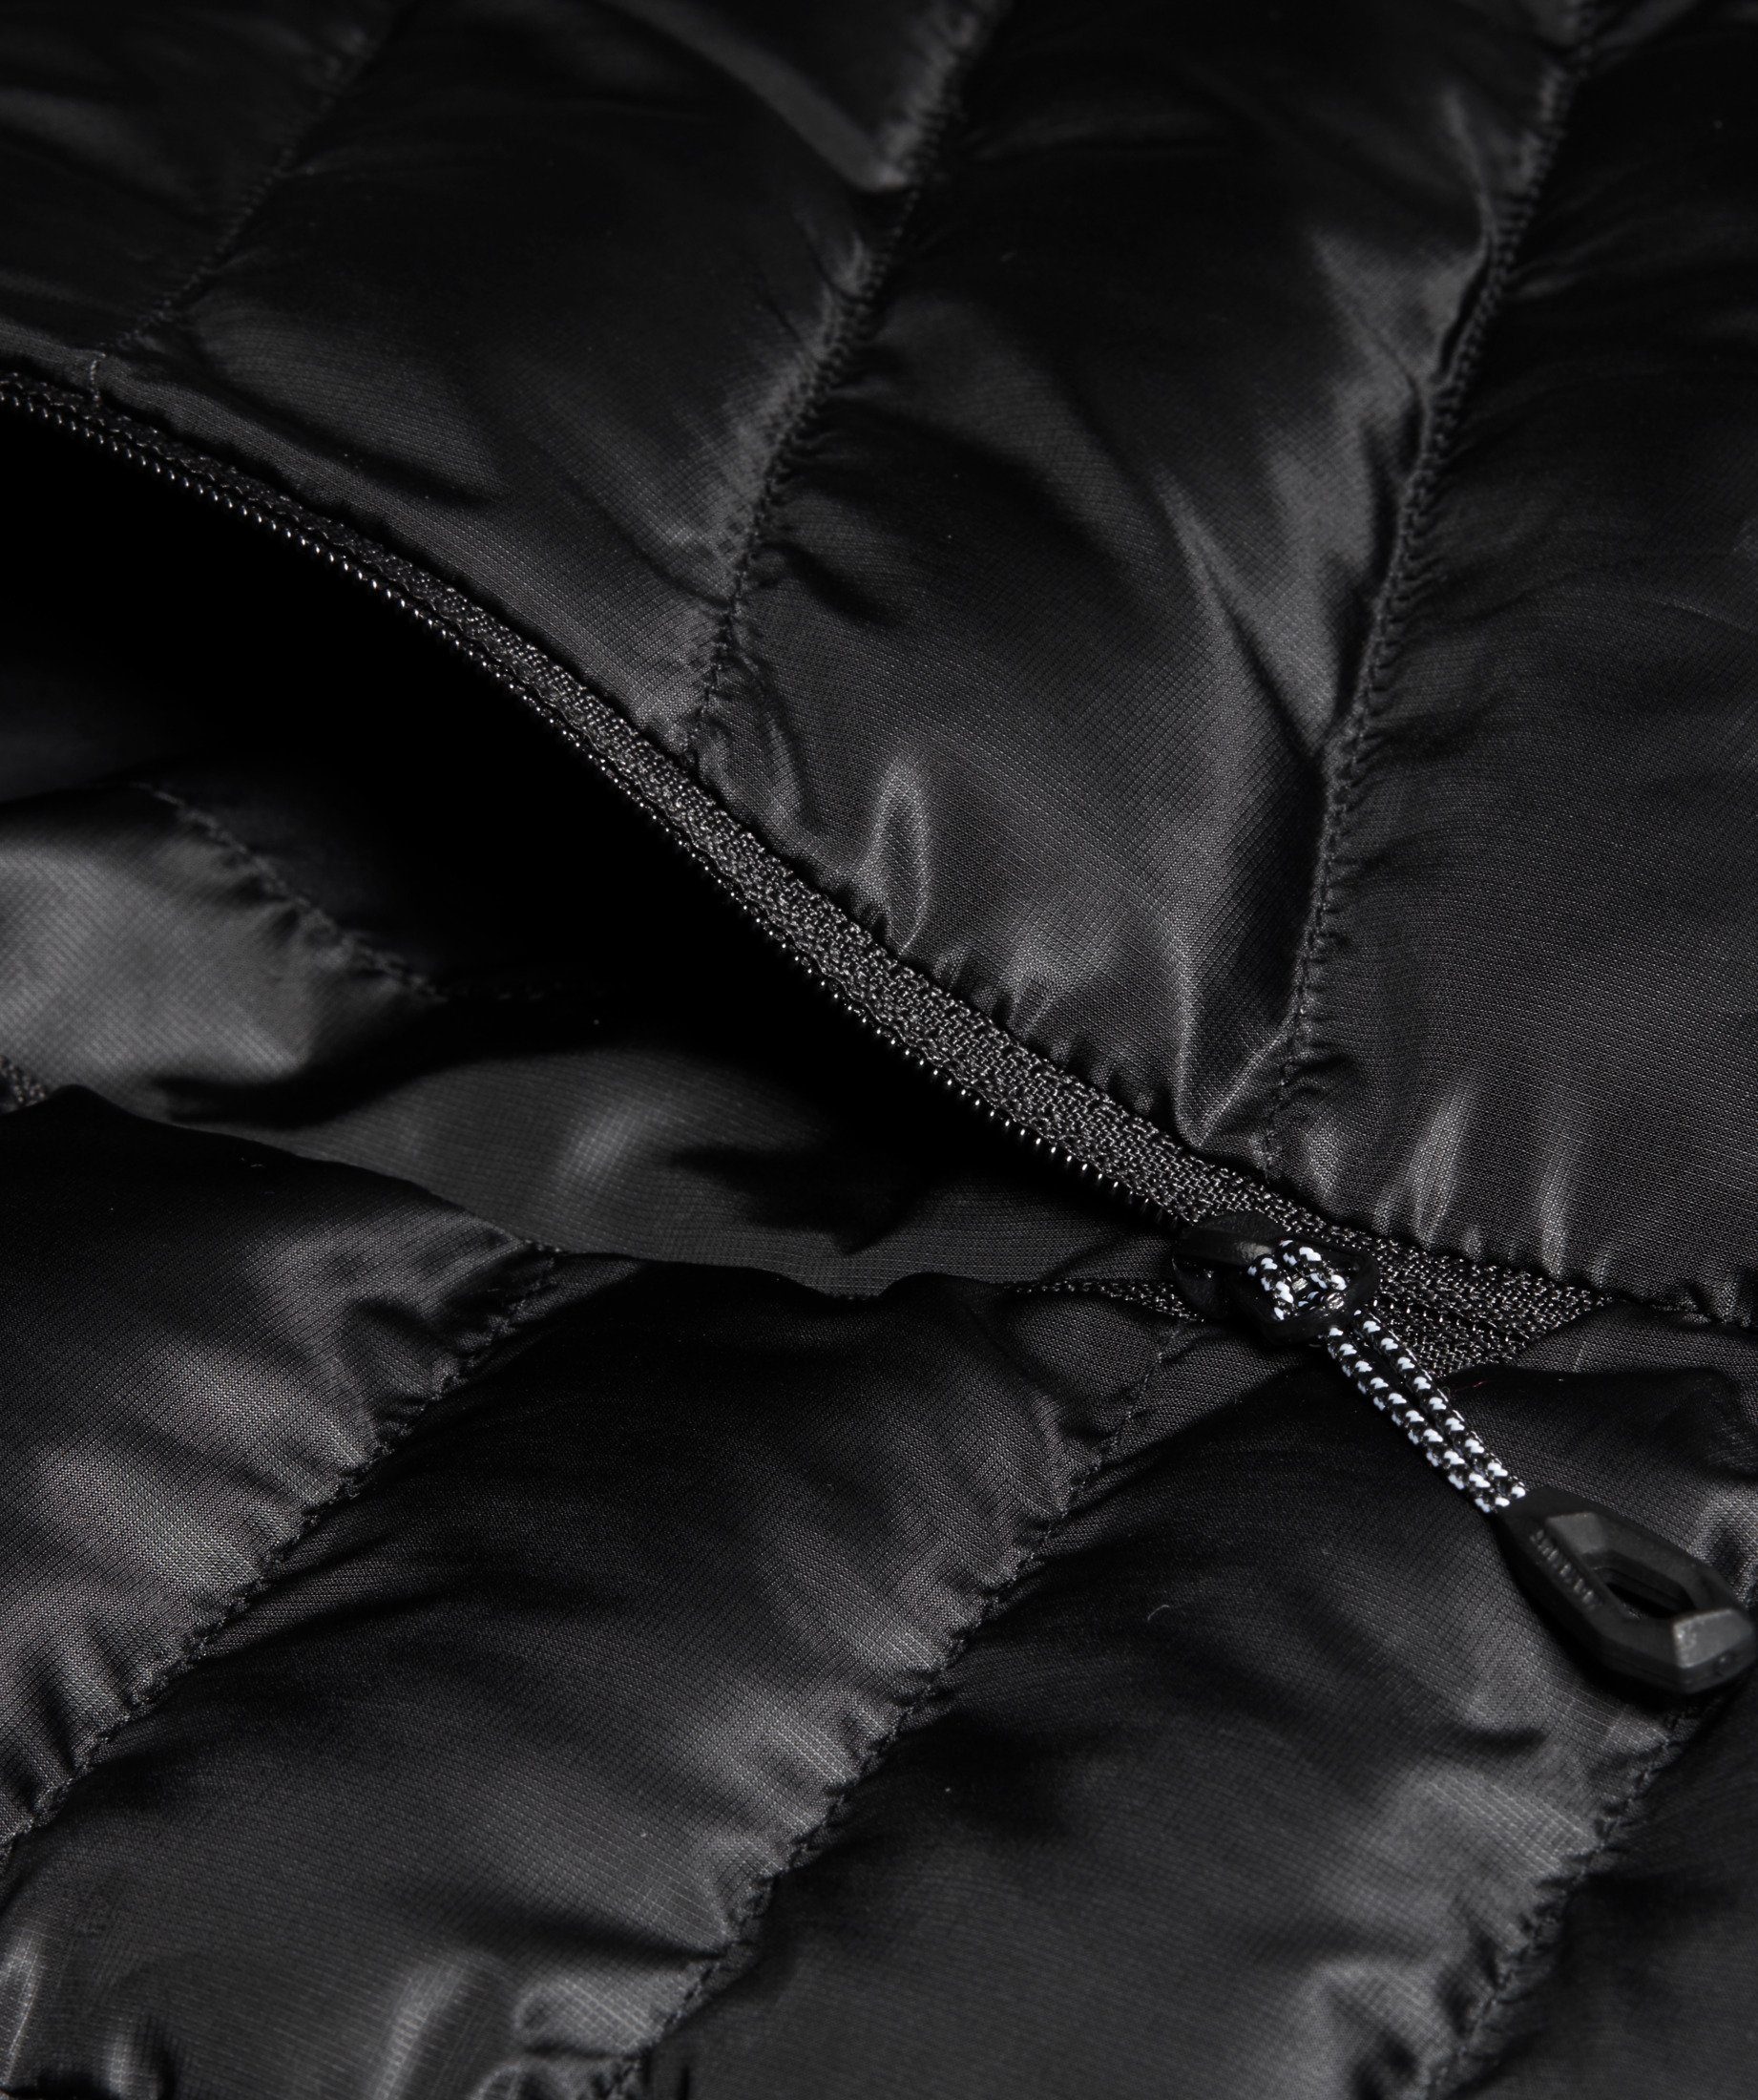 Mammut Funktionsjacke Albula IN Jacket Women Insulation black